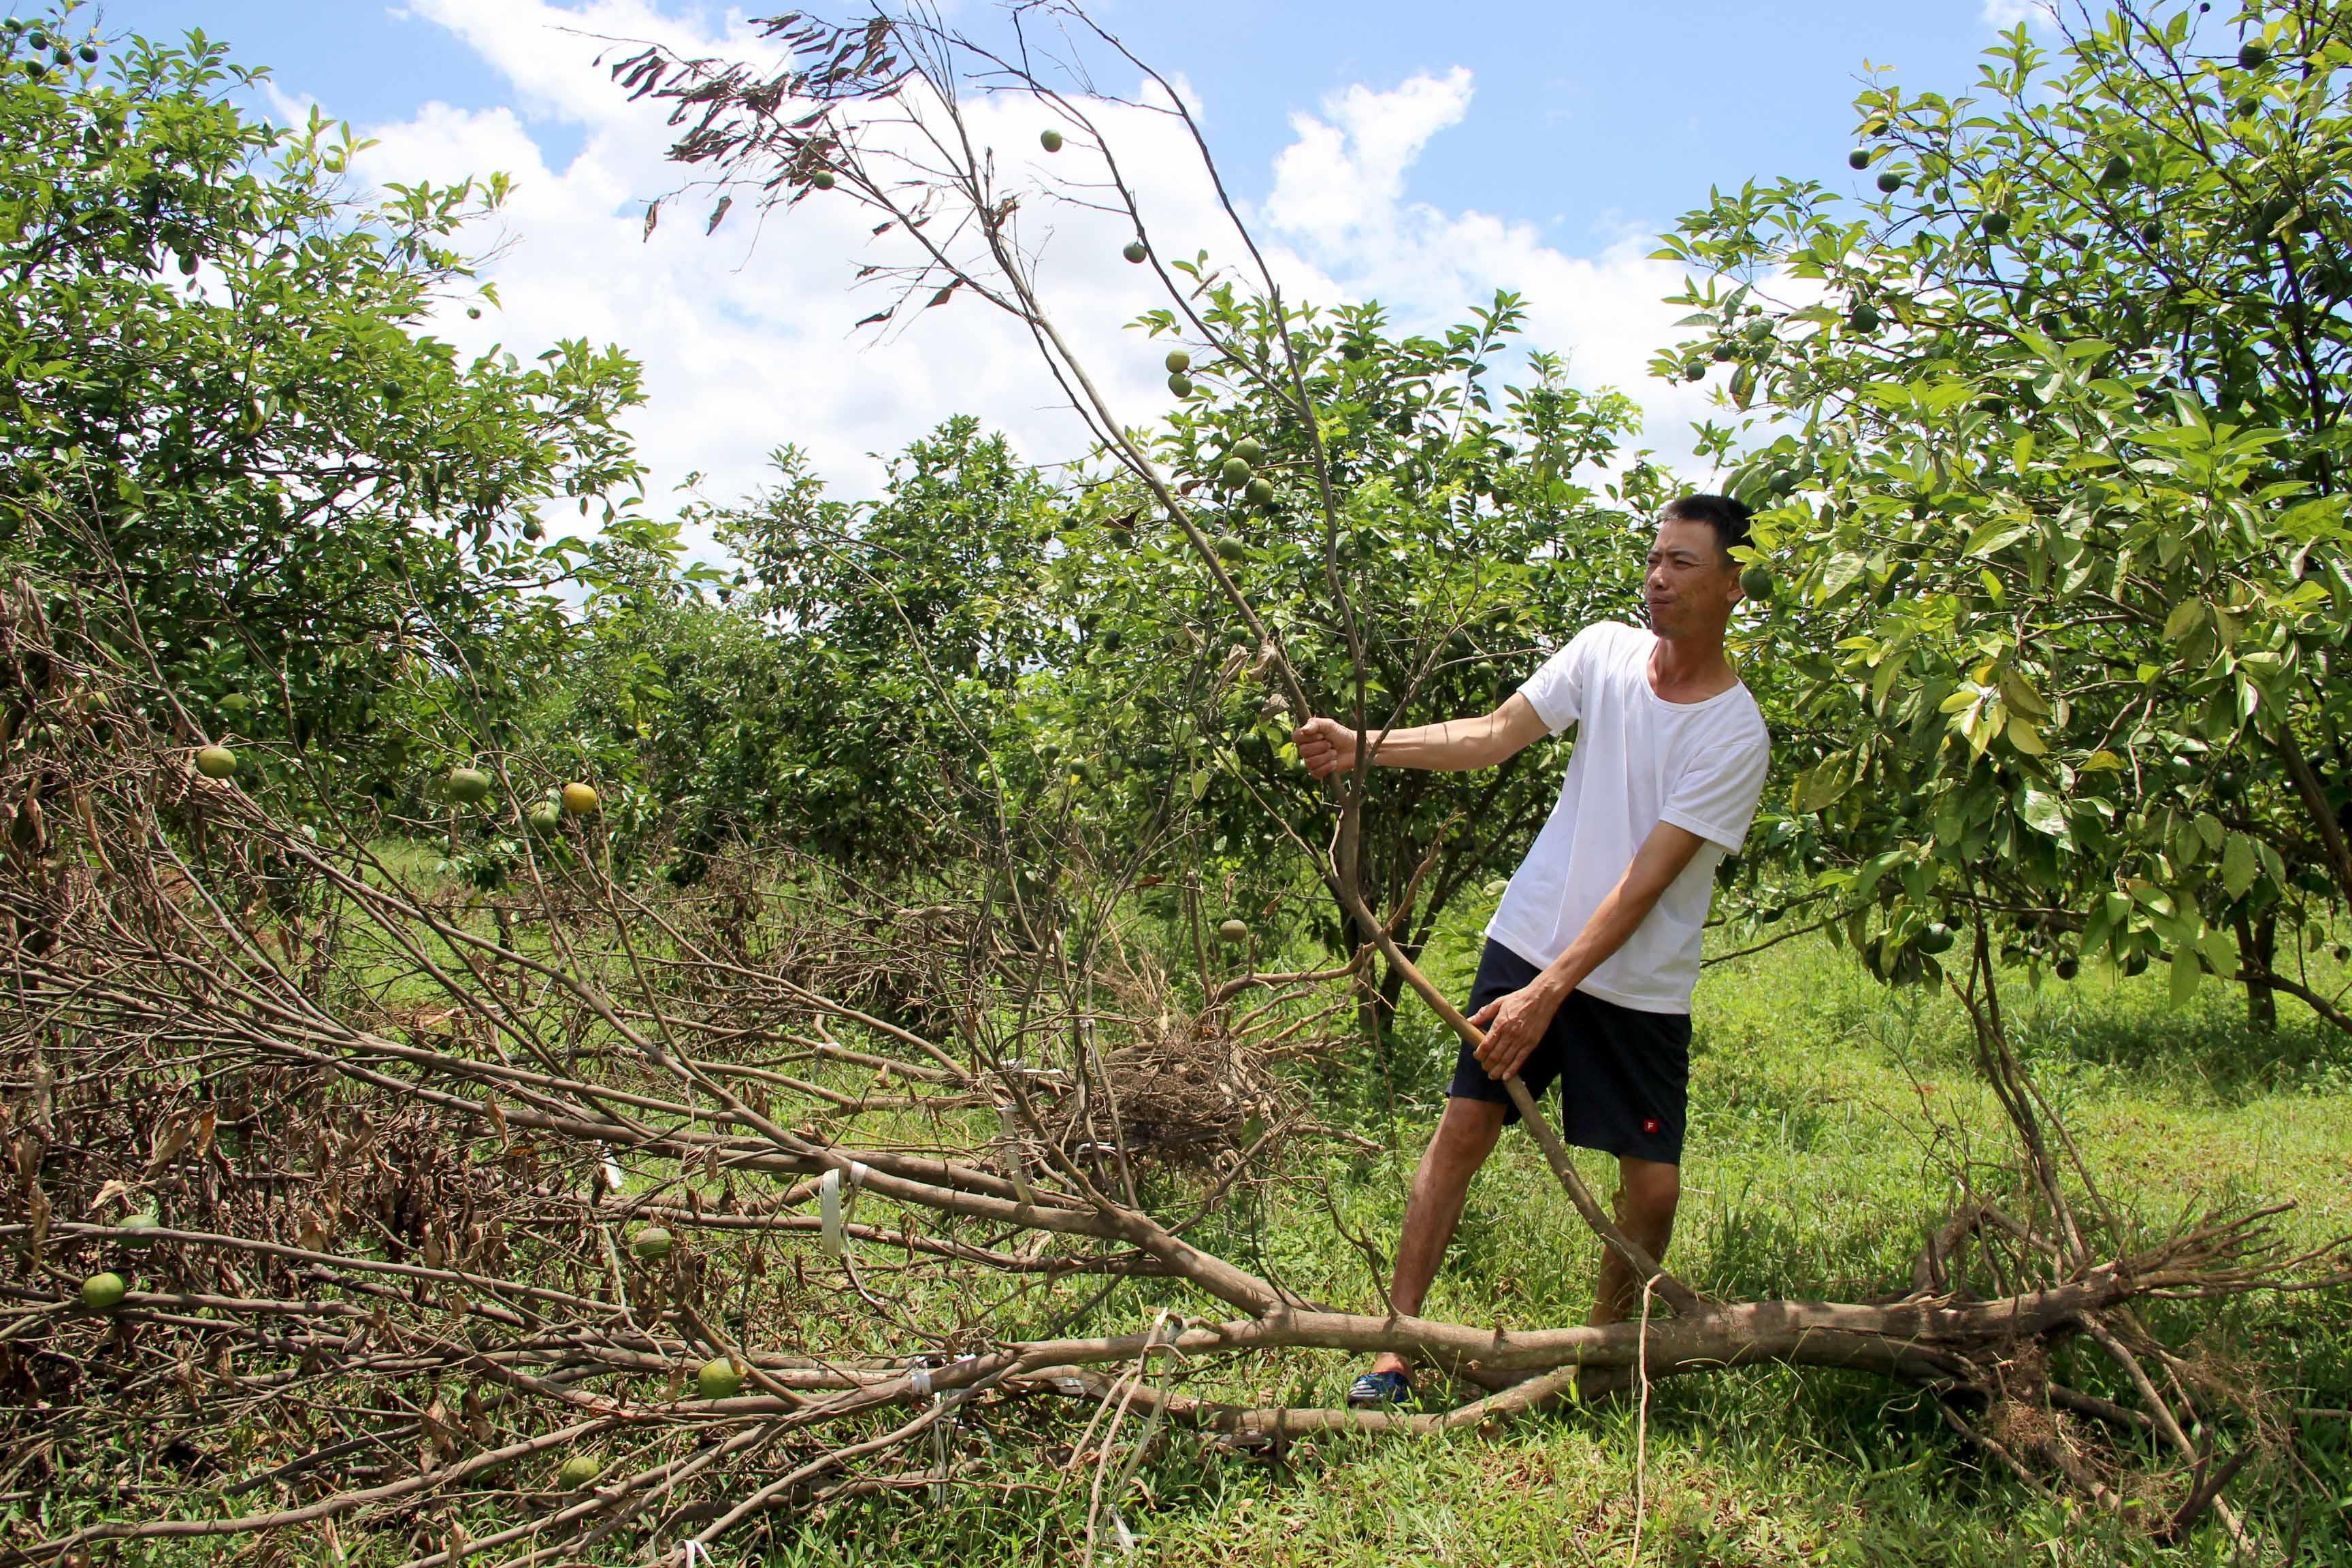 Vườn cam của gia đingf ông Phan Văn Mạnh, xóm Minh Tâm, xã Minh Hợp đã phải chặt bỏ nhiều cây vì sâu bệnh và năngs hạn. Ảnh: Xuân Hoàng